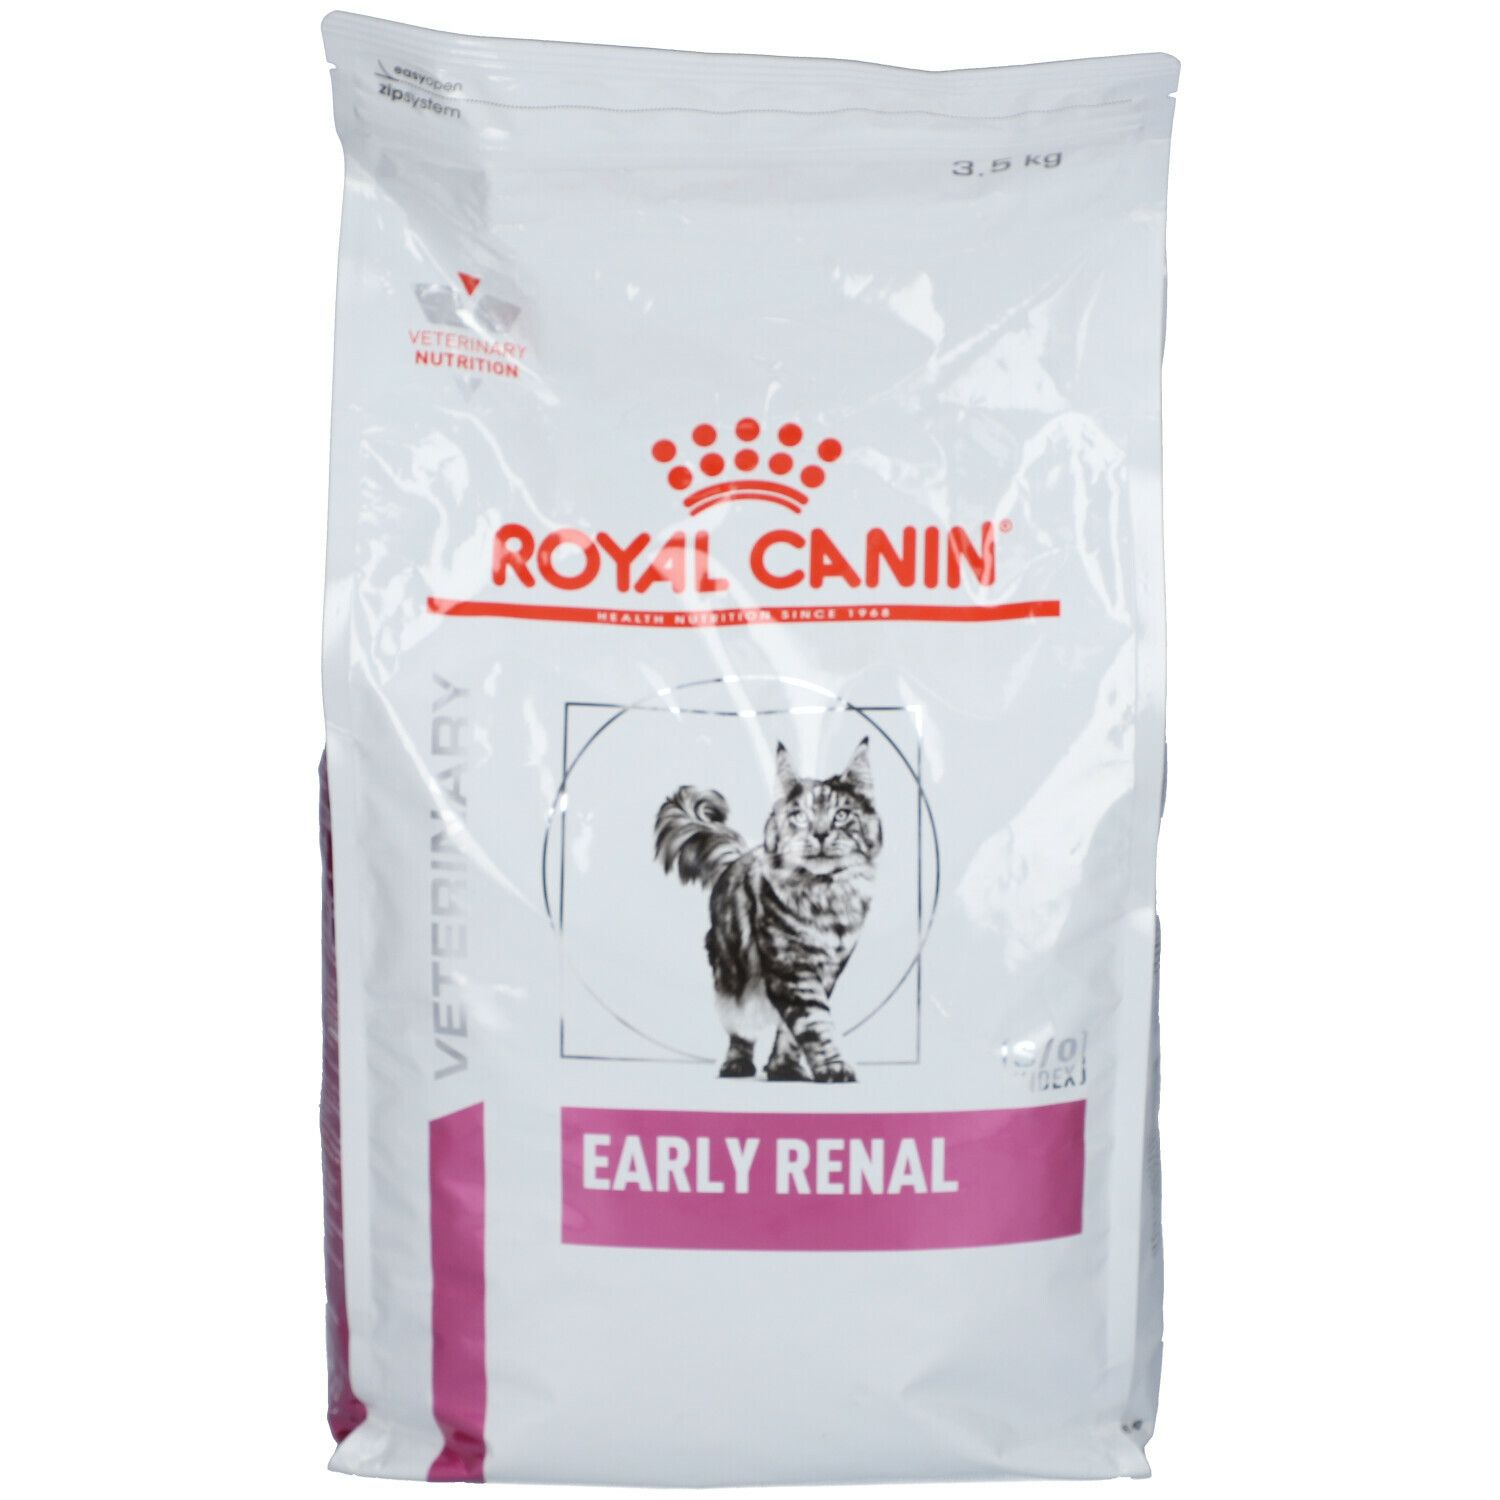 Royal Canin® Feline Early Renal